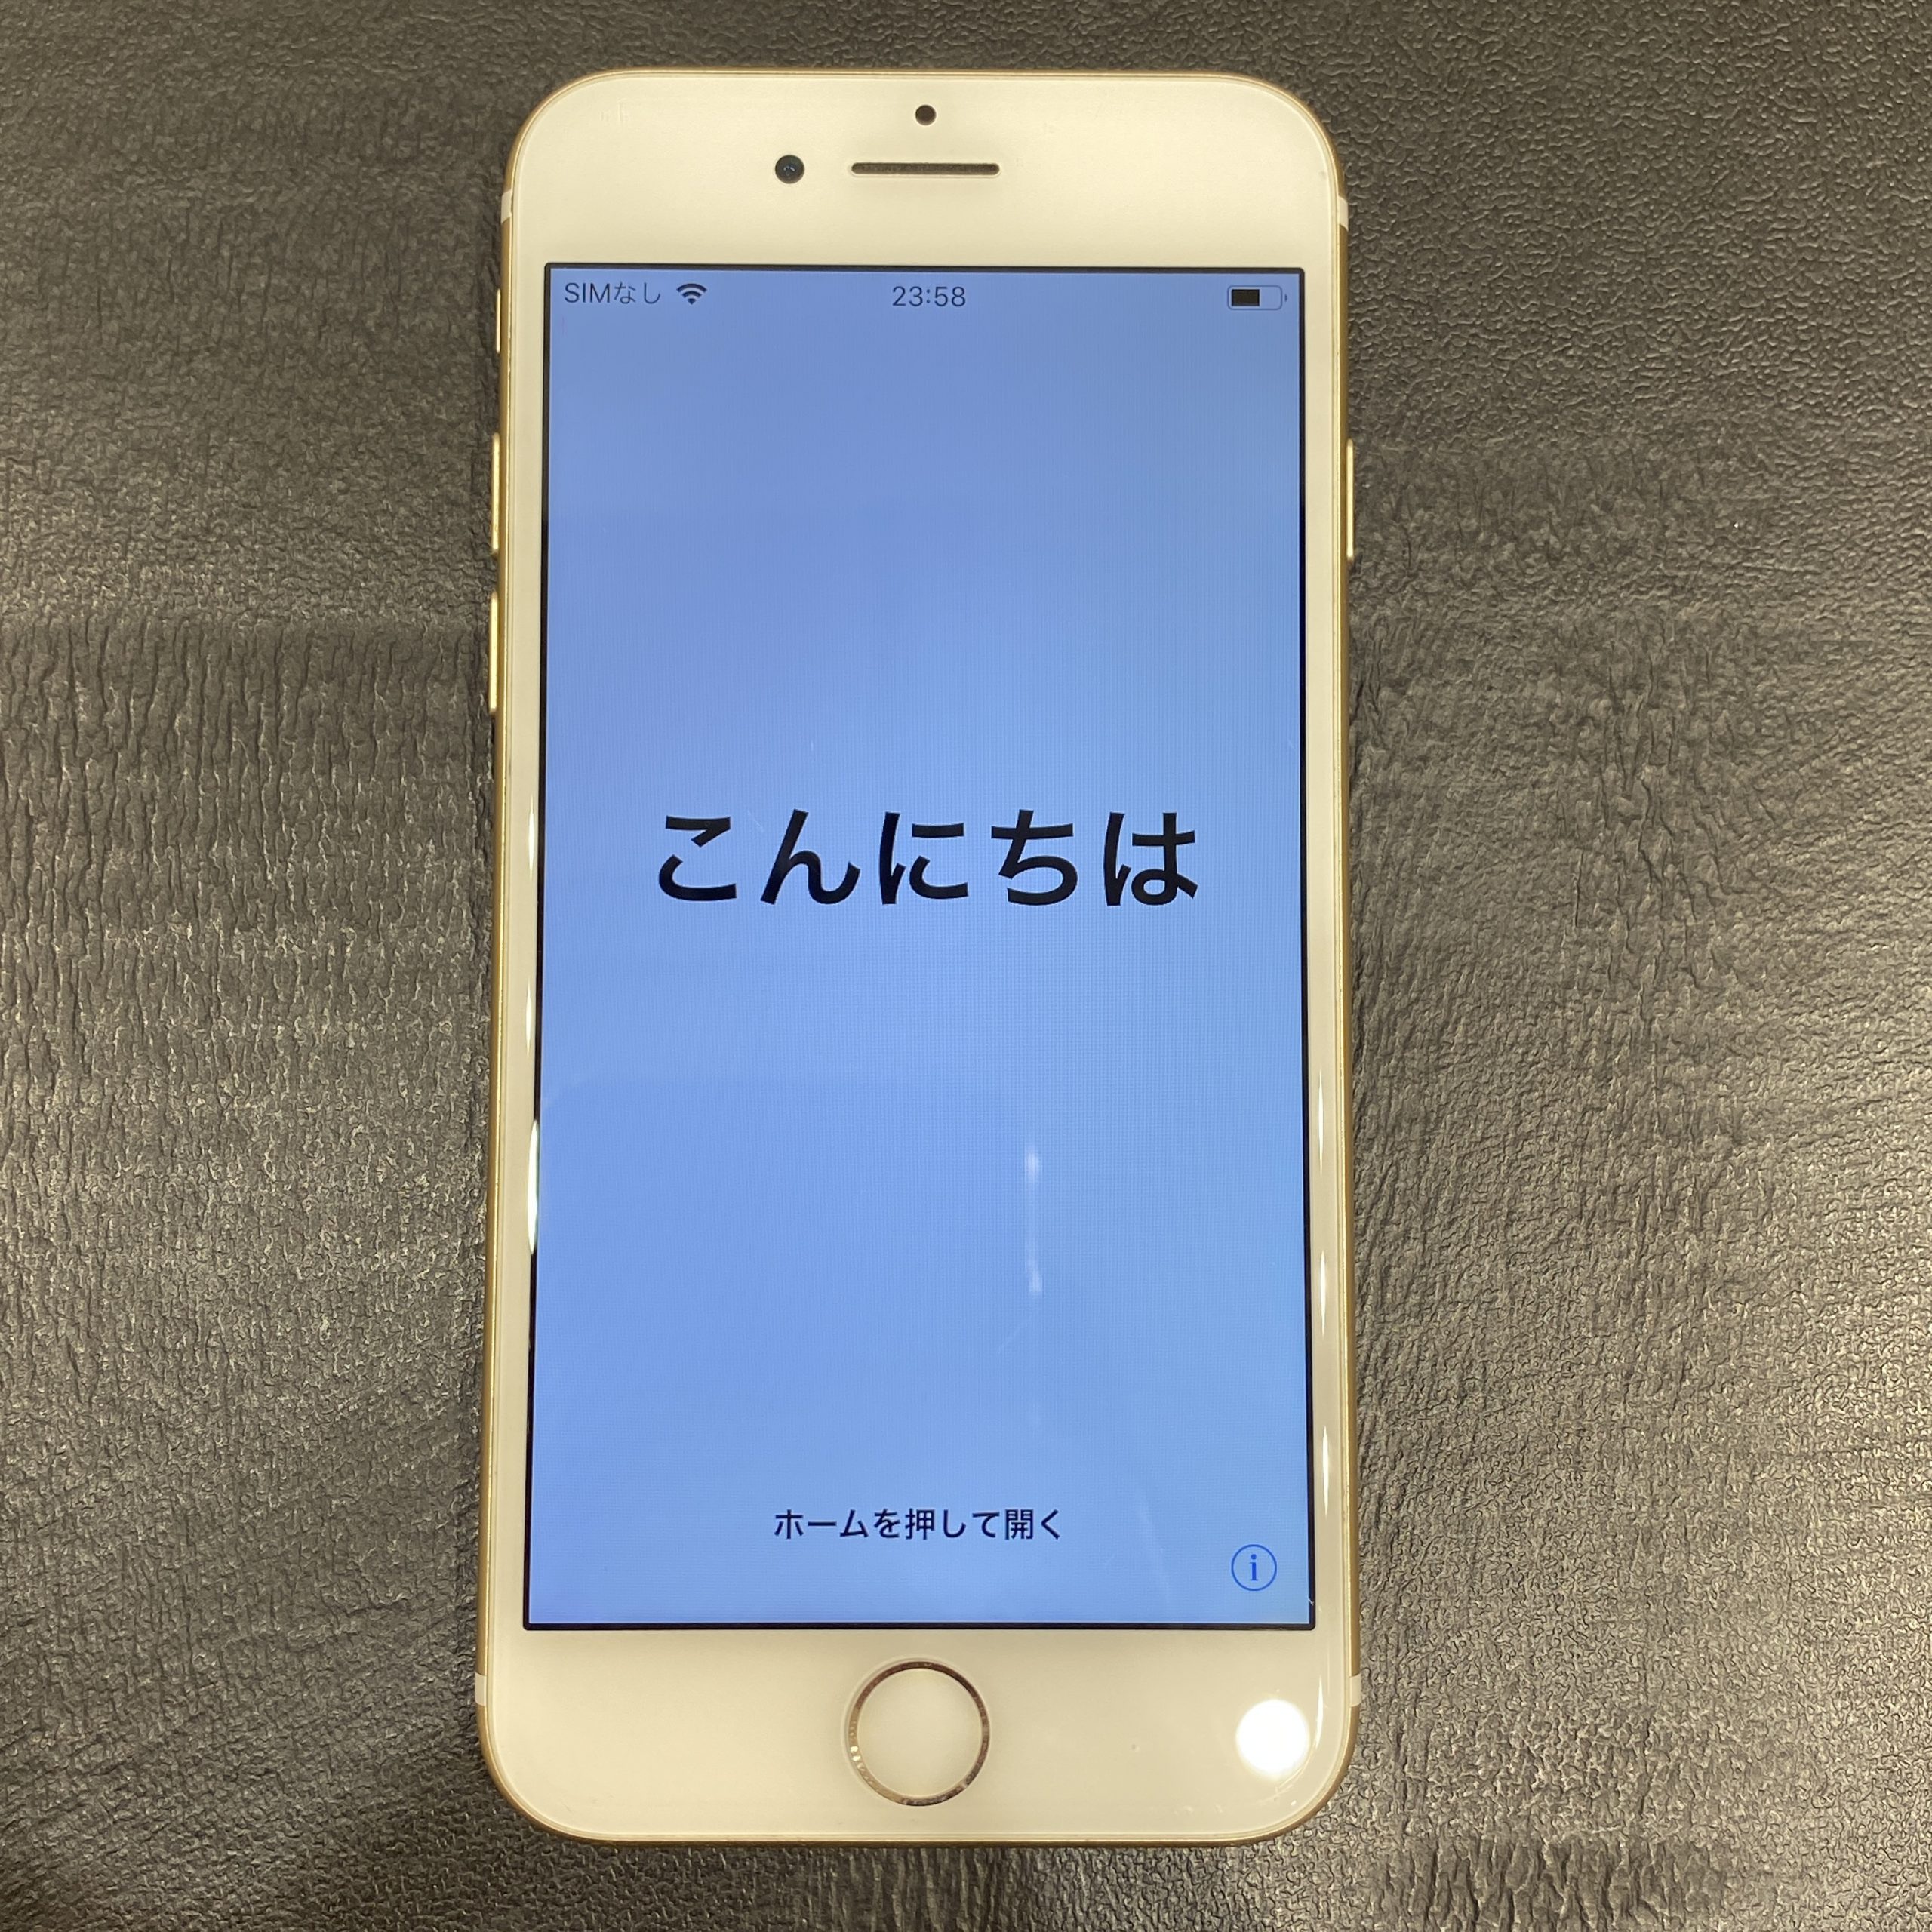 【Apple/アップル】iPhone7 A1779 128G IMEI〇 操作〇 GOLD/ゴールド